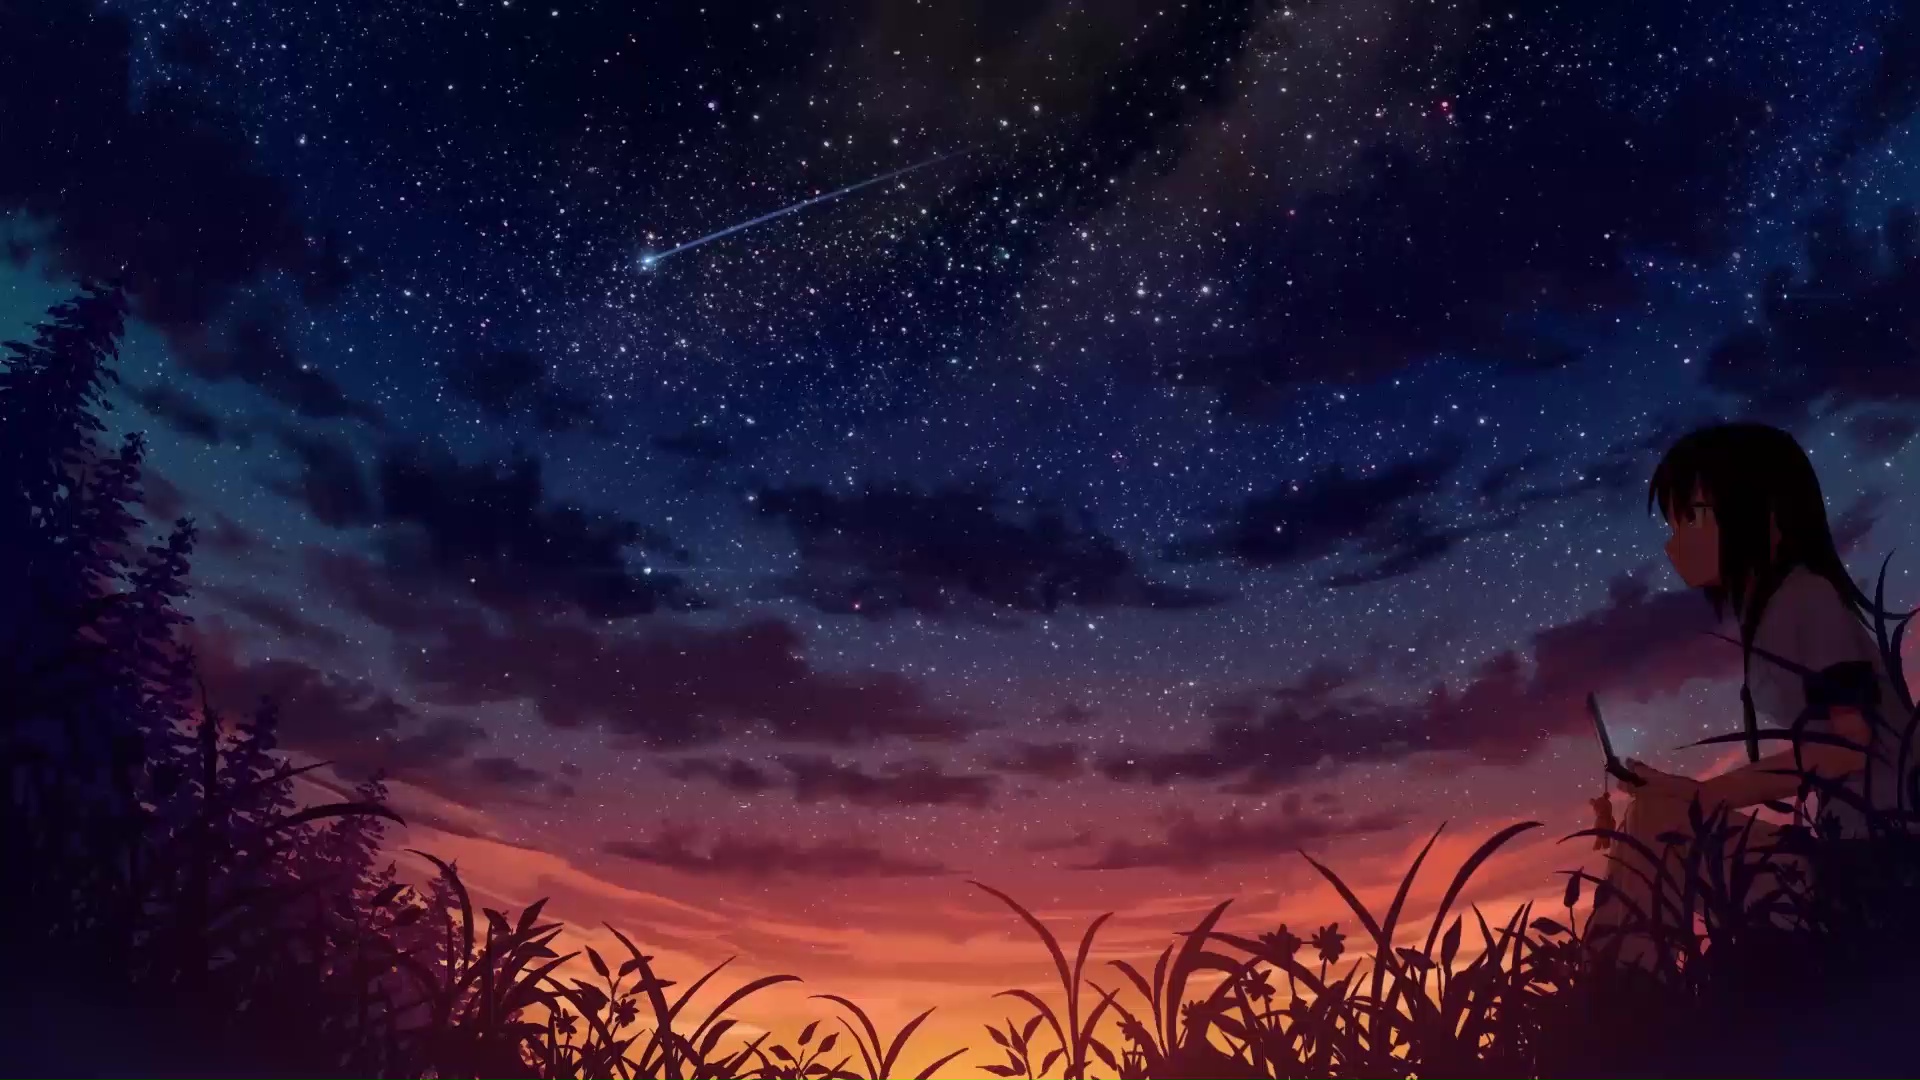 Ảnh nền đêm sao Anime mang đến cho người dùng một trải nghiệm thú vị và đầy cảm xúc. Với đường nét tinh tế và dàn hậu cảnh tuyệt đẹp, những bức ảnh này sẽ tạo cho bạn một không gian thực sự phù hợp bất kể làm nền cho điện thoại hay cho desktop. Xem nào, bạn sẽ cảm thấy thăng hoa khi ngắm nhìn những vì sao rực rỡ trên bầu trời đêm nào!